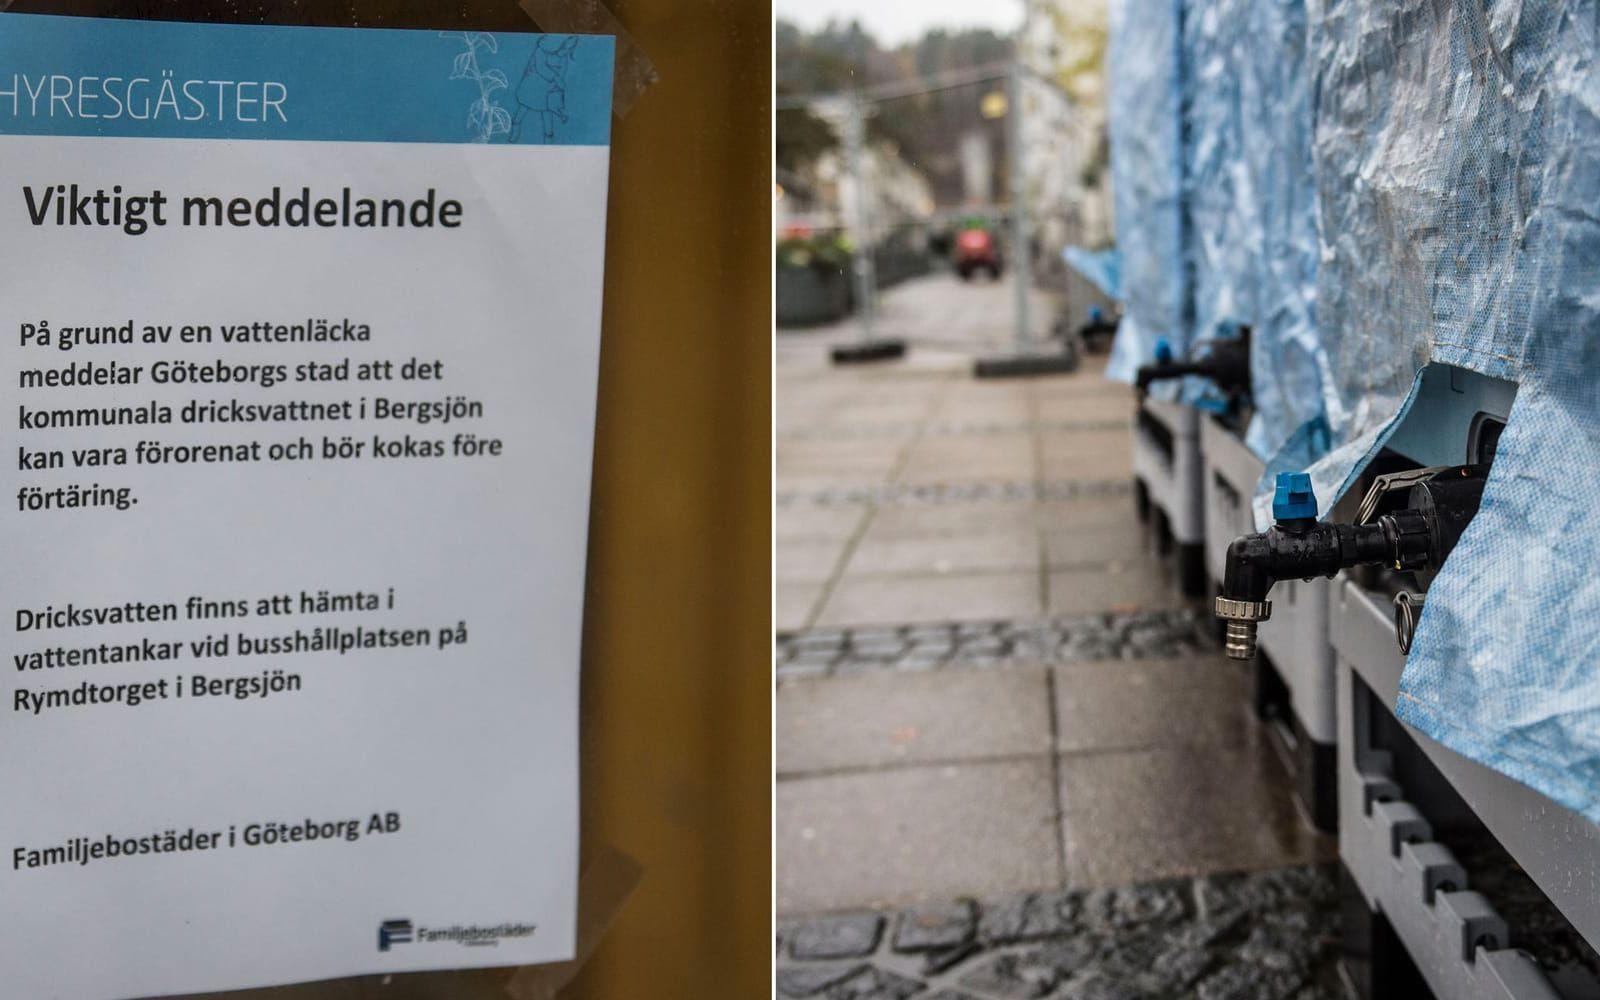 Boende i berörda områden förväntas få koka sitt kranvatten åtminstone fram till på fredagen. Bild: Olof Ohlsson
